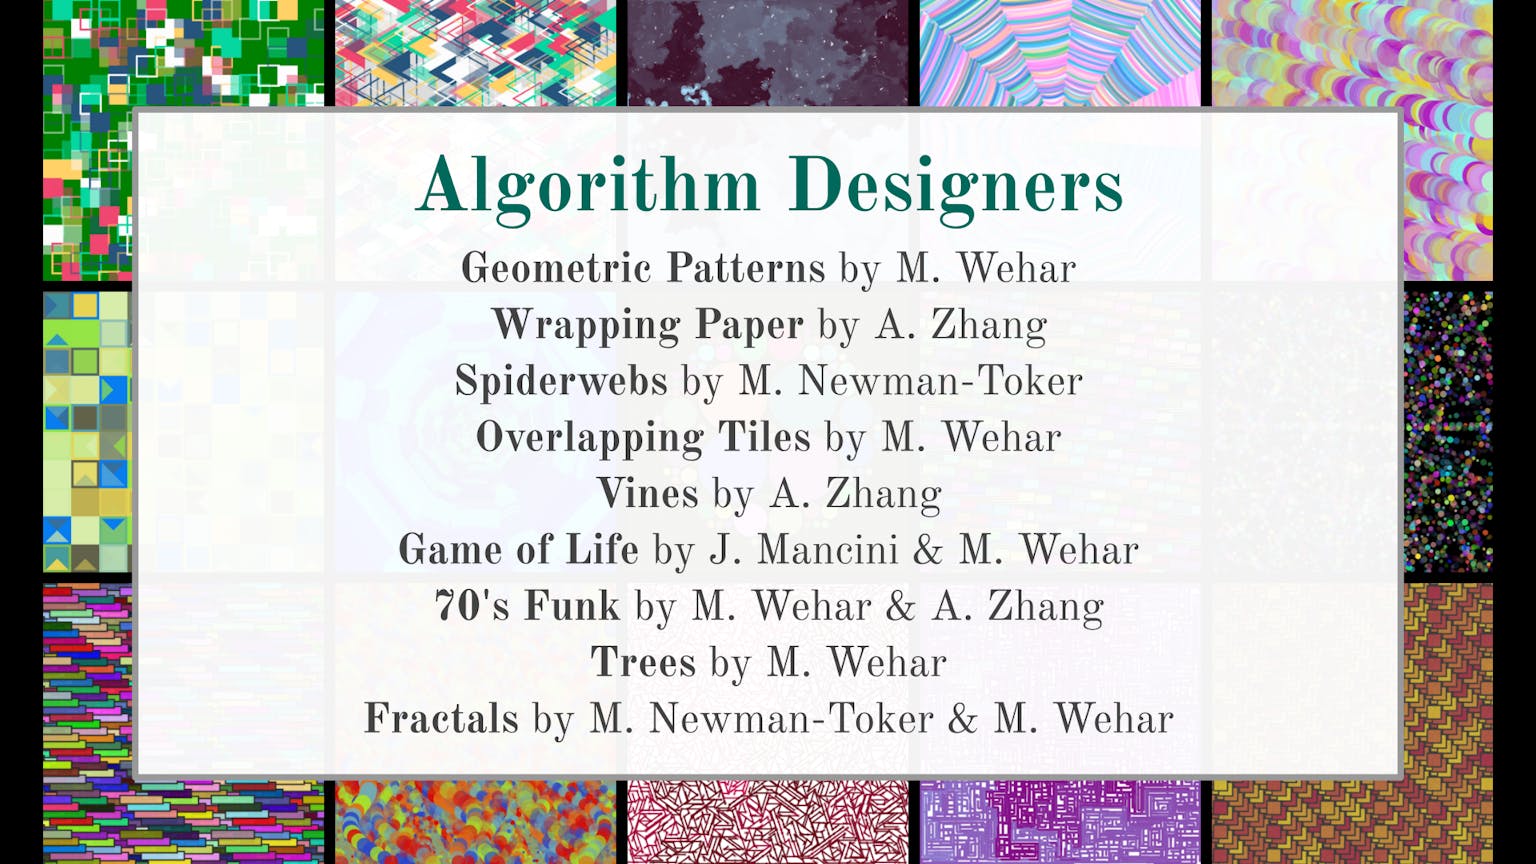 Image for entry 'AlgoArt - Nine Drawing Algorithms'